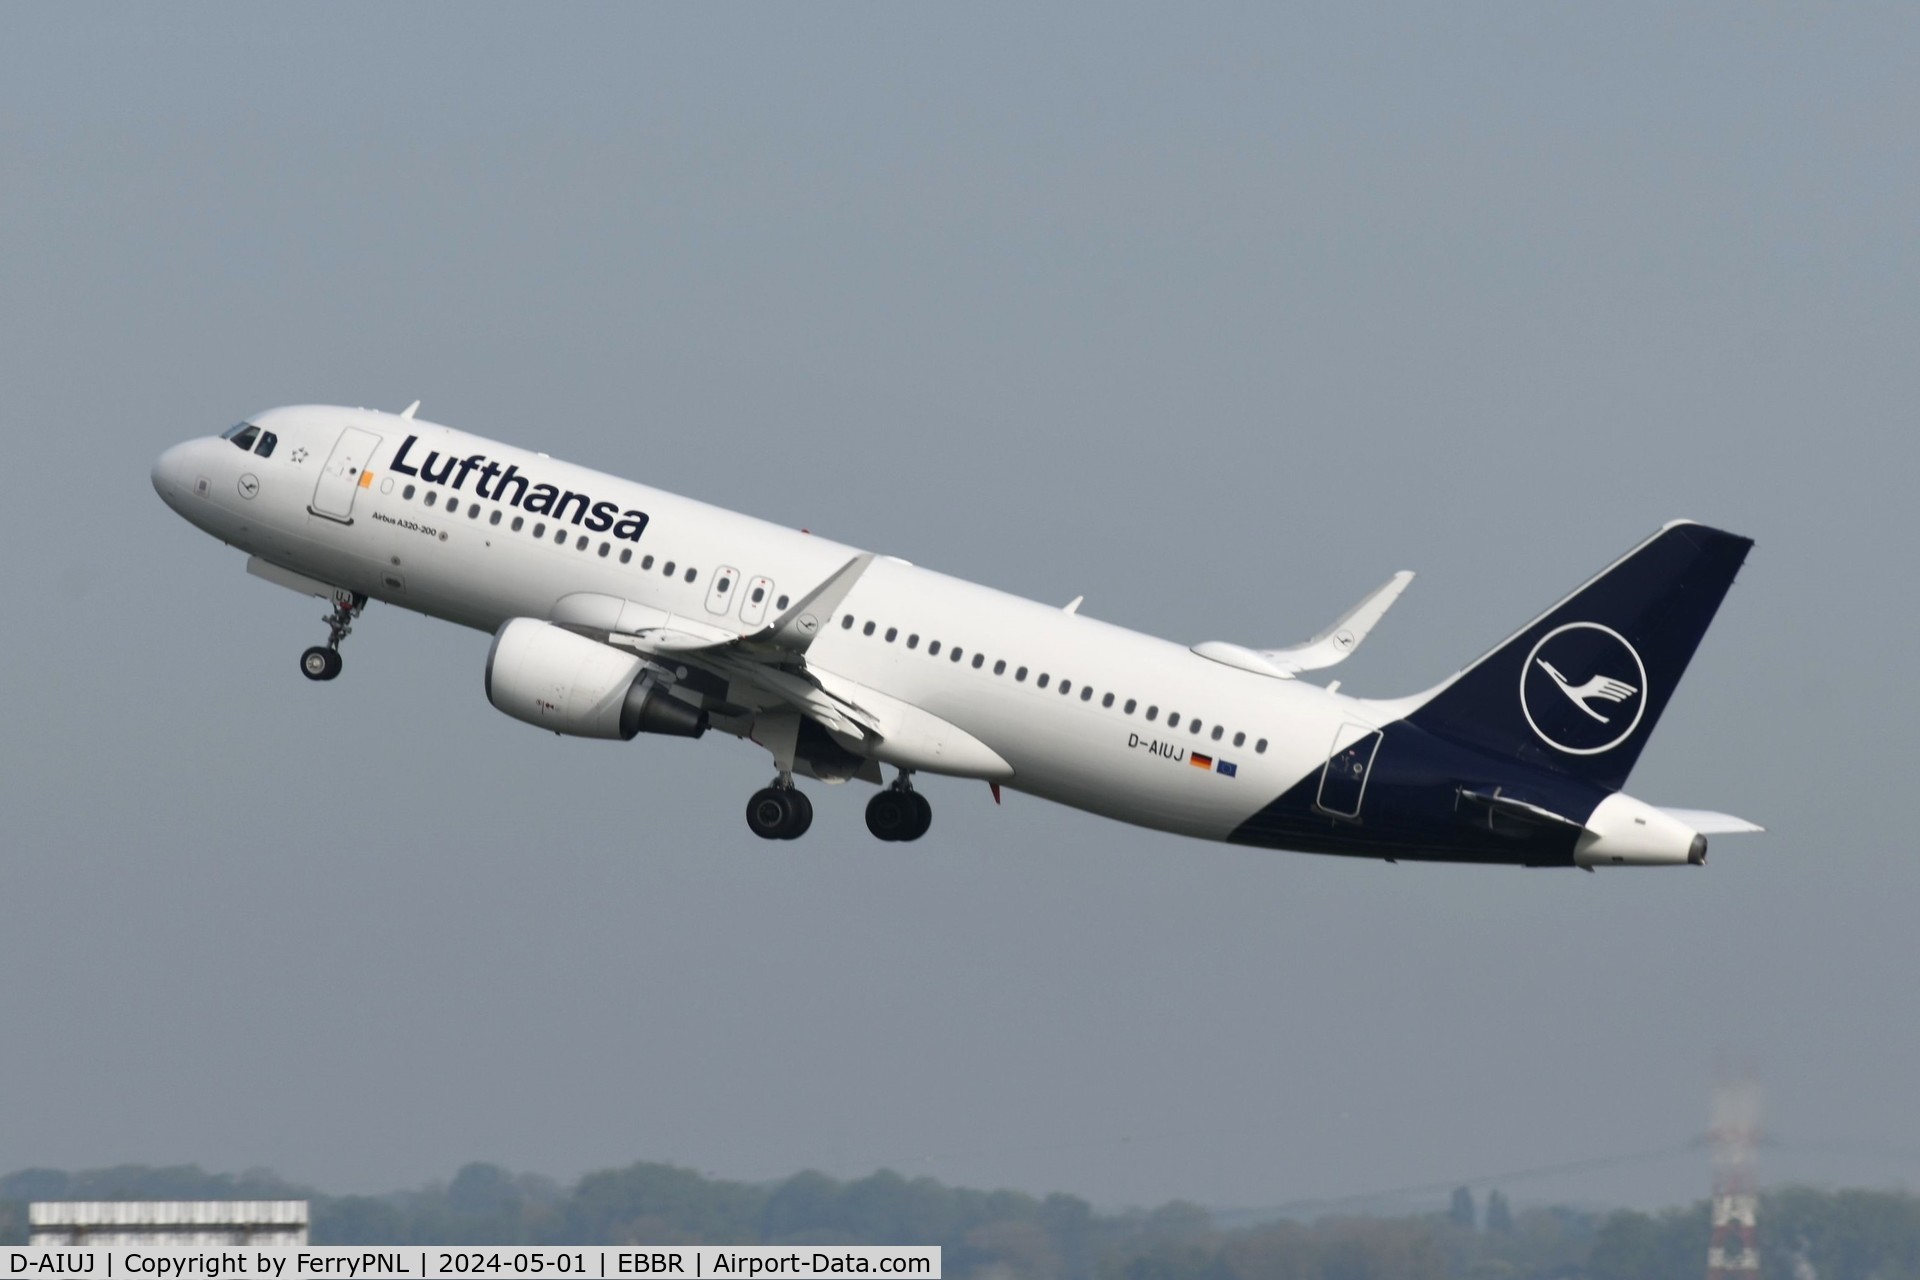 D-AIUJ, 2014 Airbus A320-214 C/N 6301, Lufthansa A320 departing